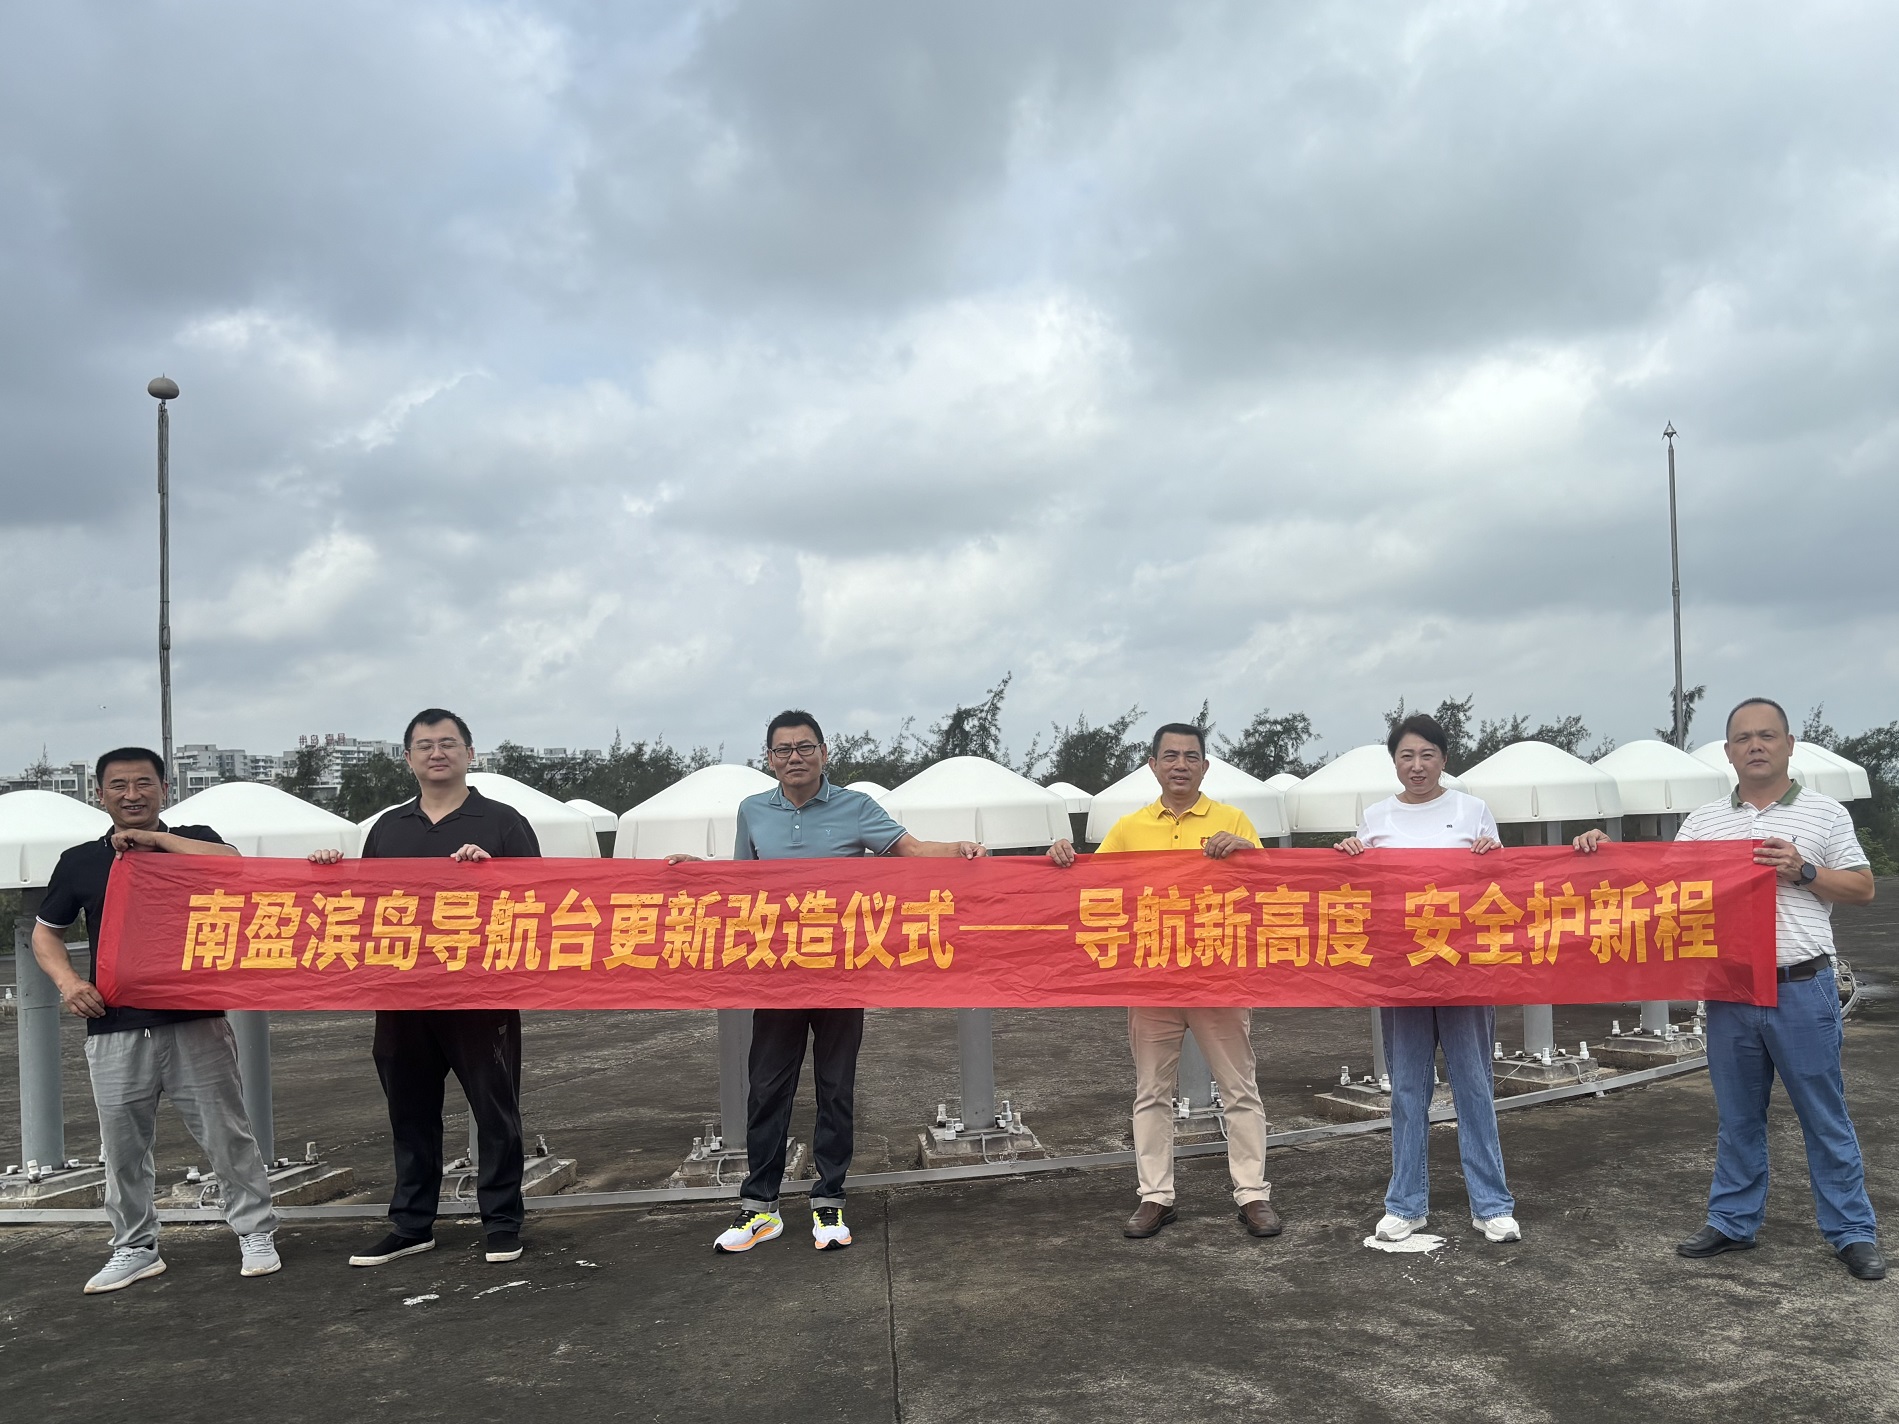 海南空管分局南盈滨岛导航台更新改造项目进入实施阶段